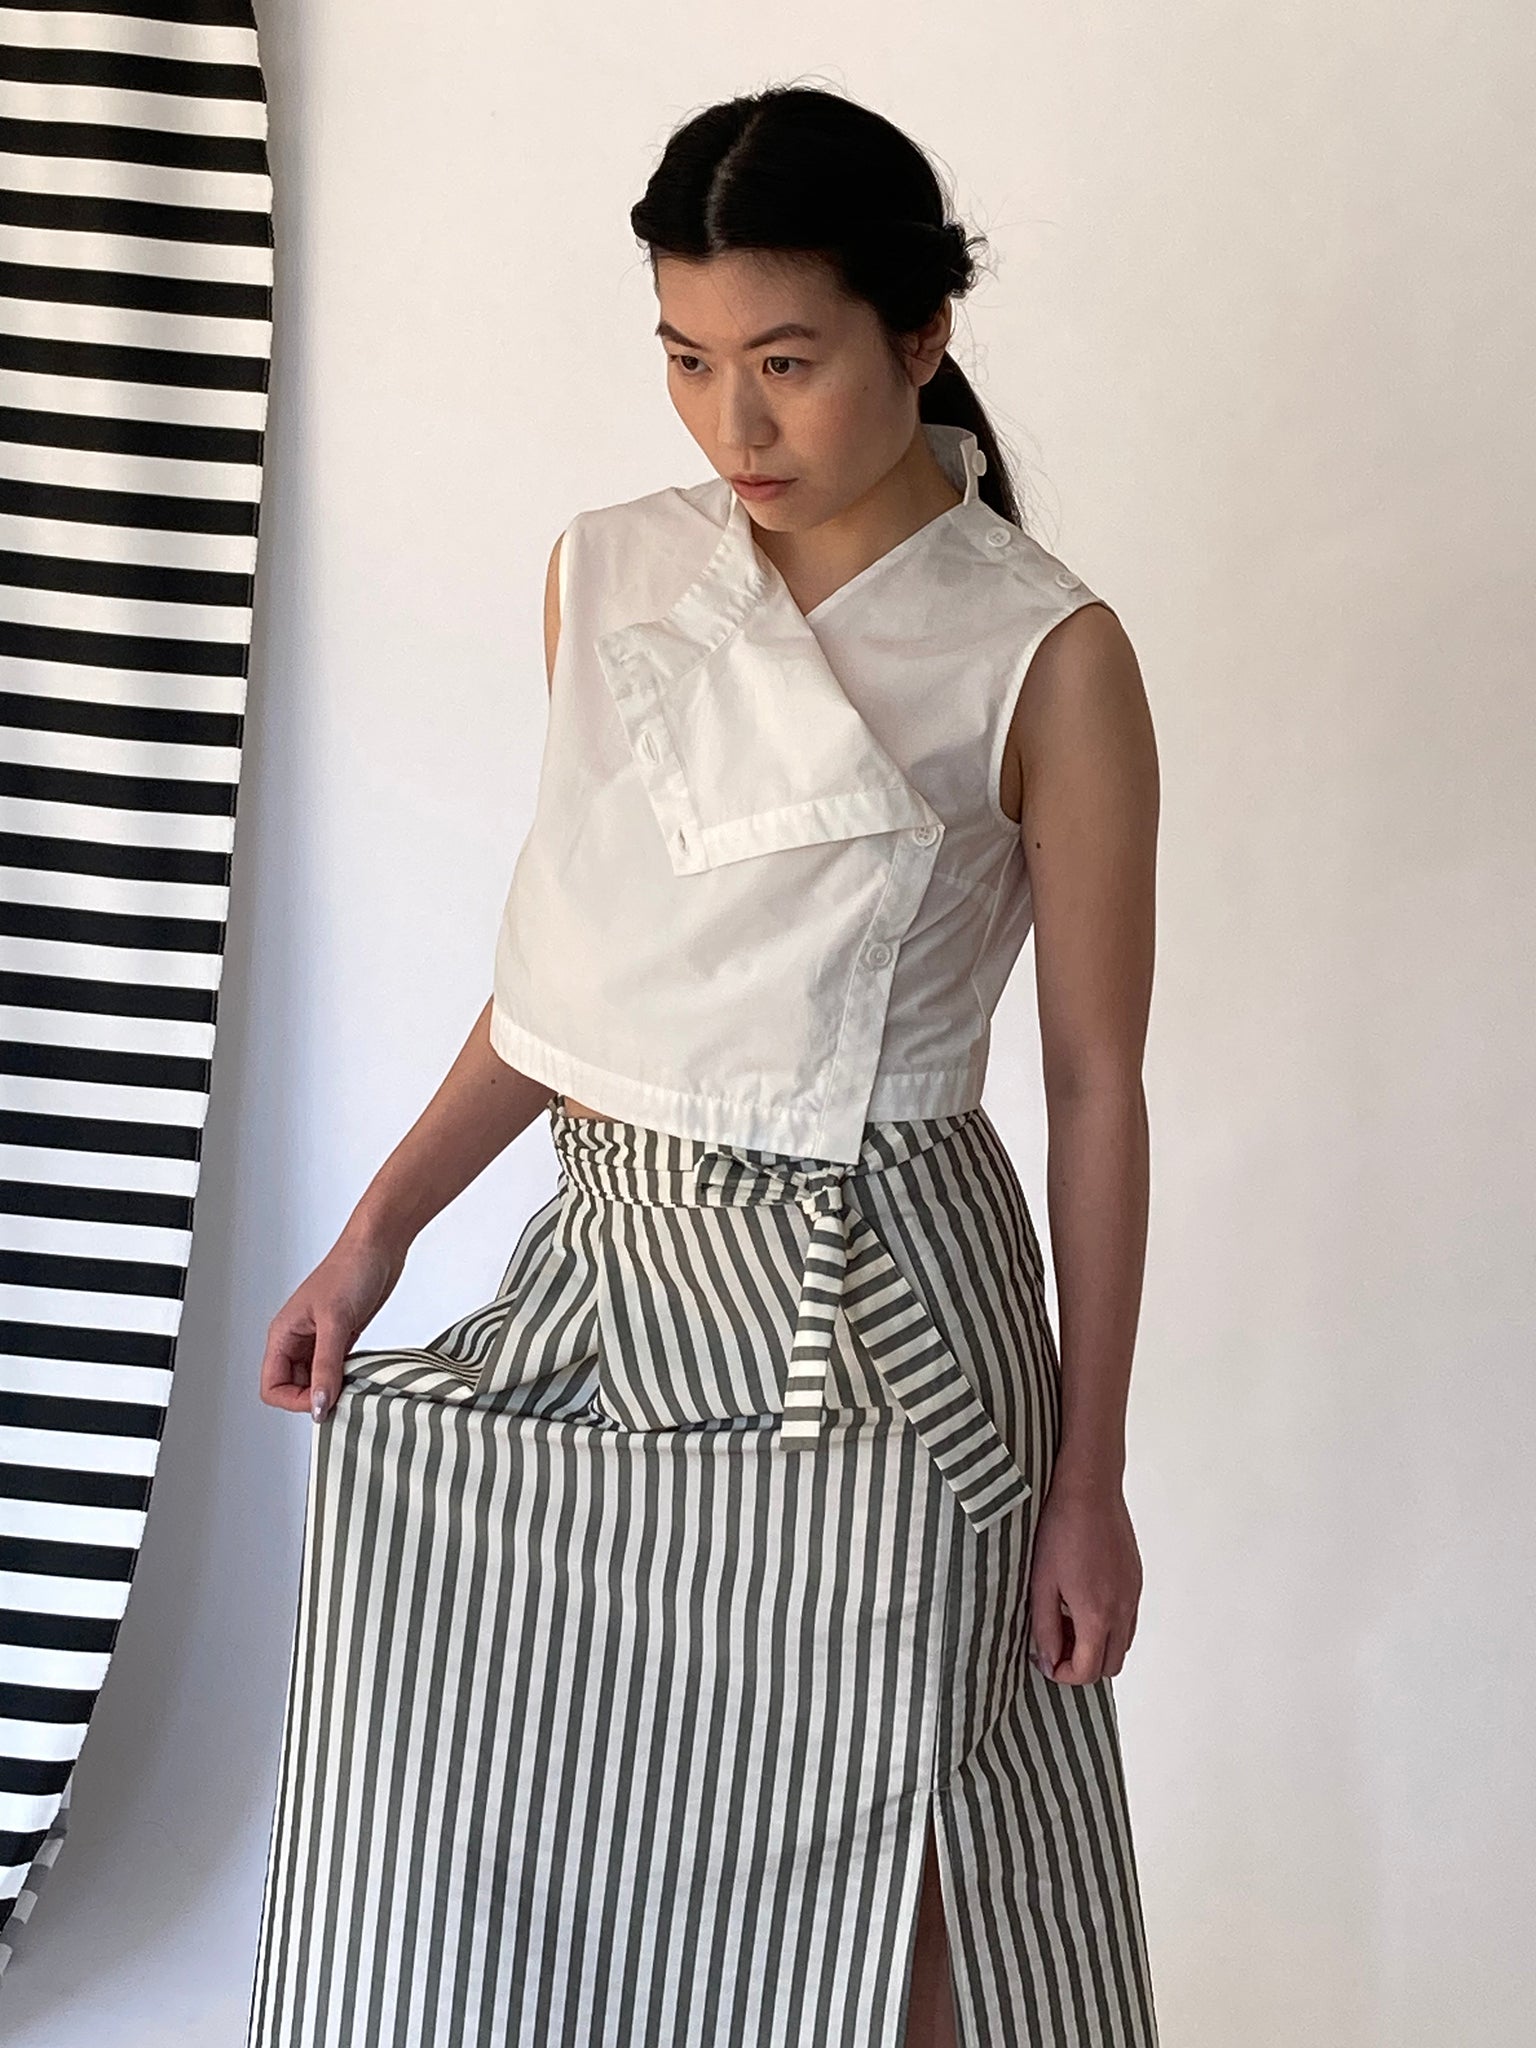 Xiu skirt, stripes